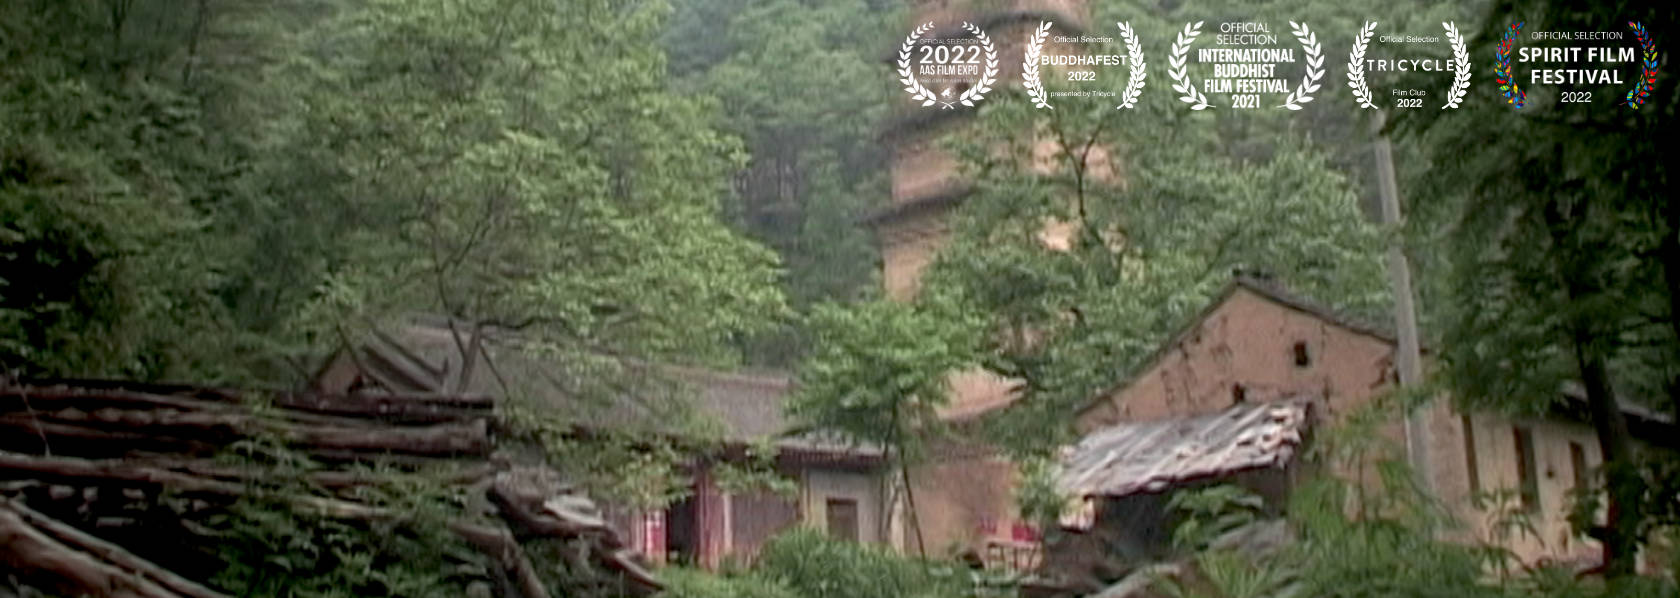 山道 The Mountain Path - Shifu hermitage in the mountains - THIS Buddhist Film Festival